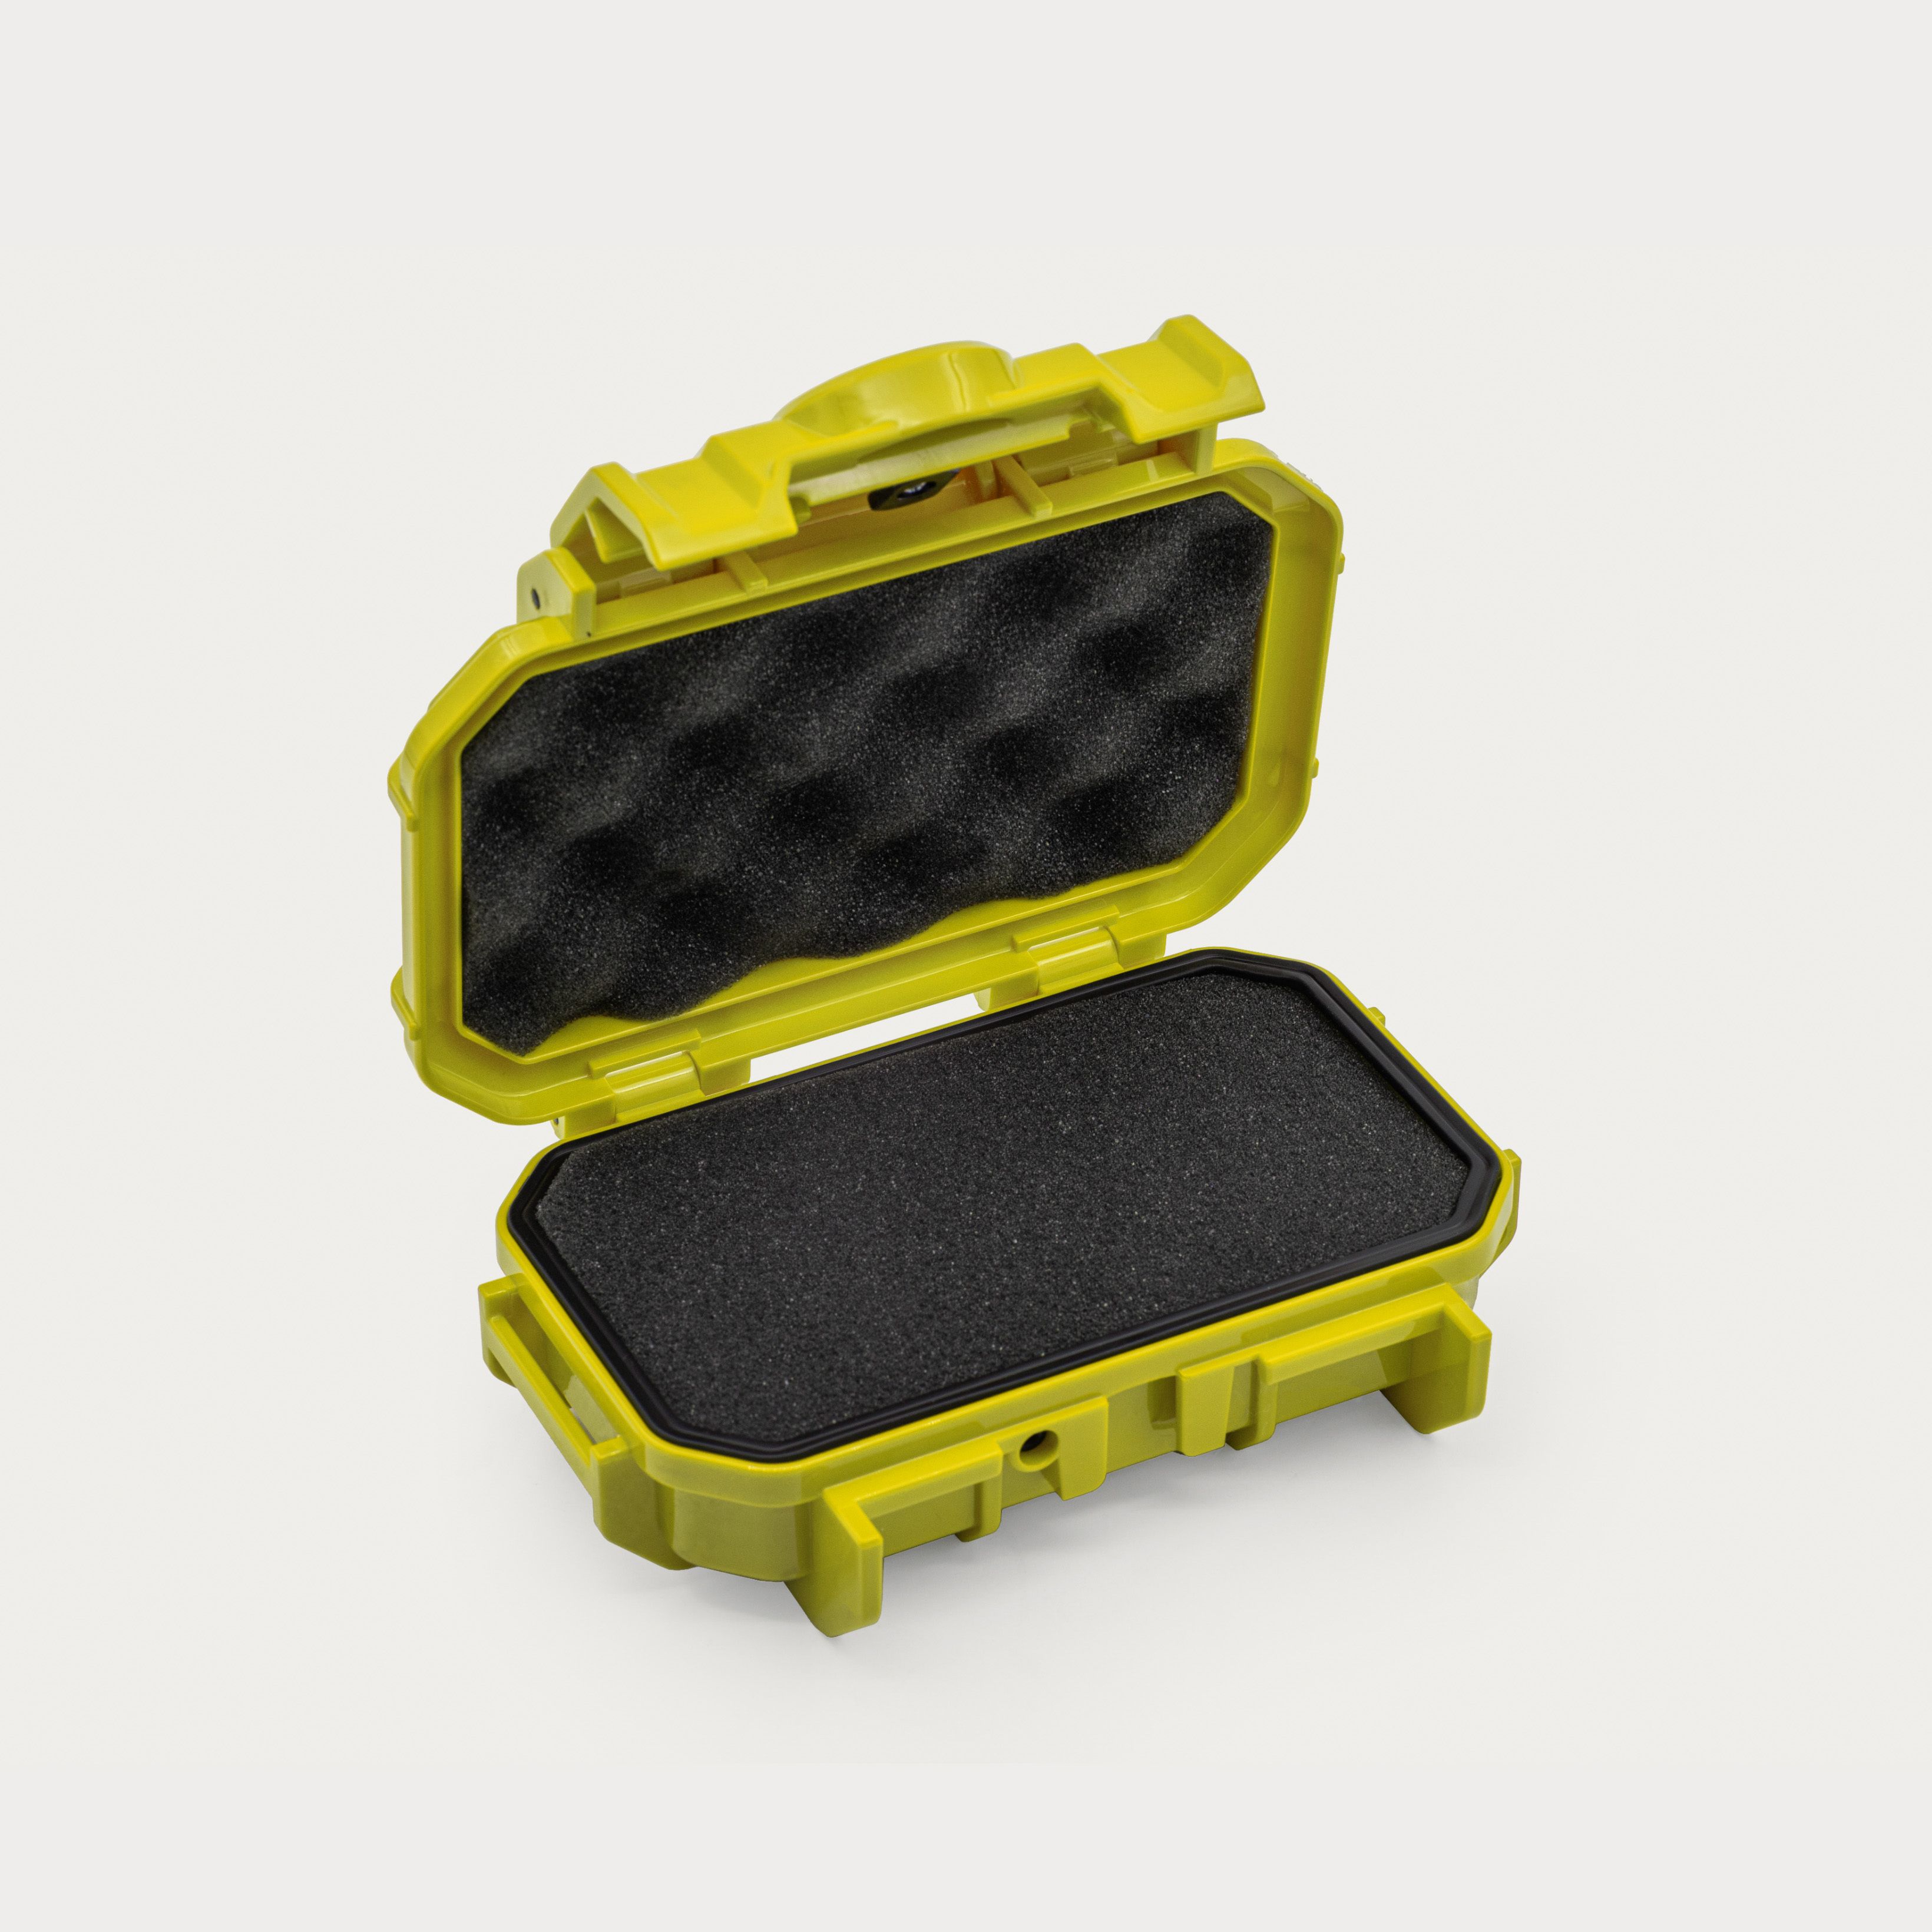 UN Japan Waterproof Double 35mm Film Roll Case Belt Clip Yellow